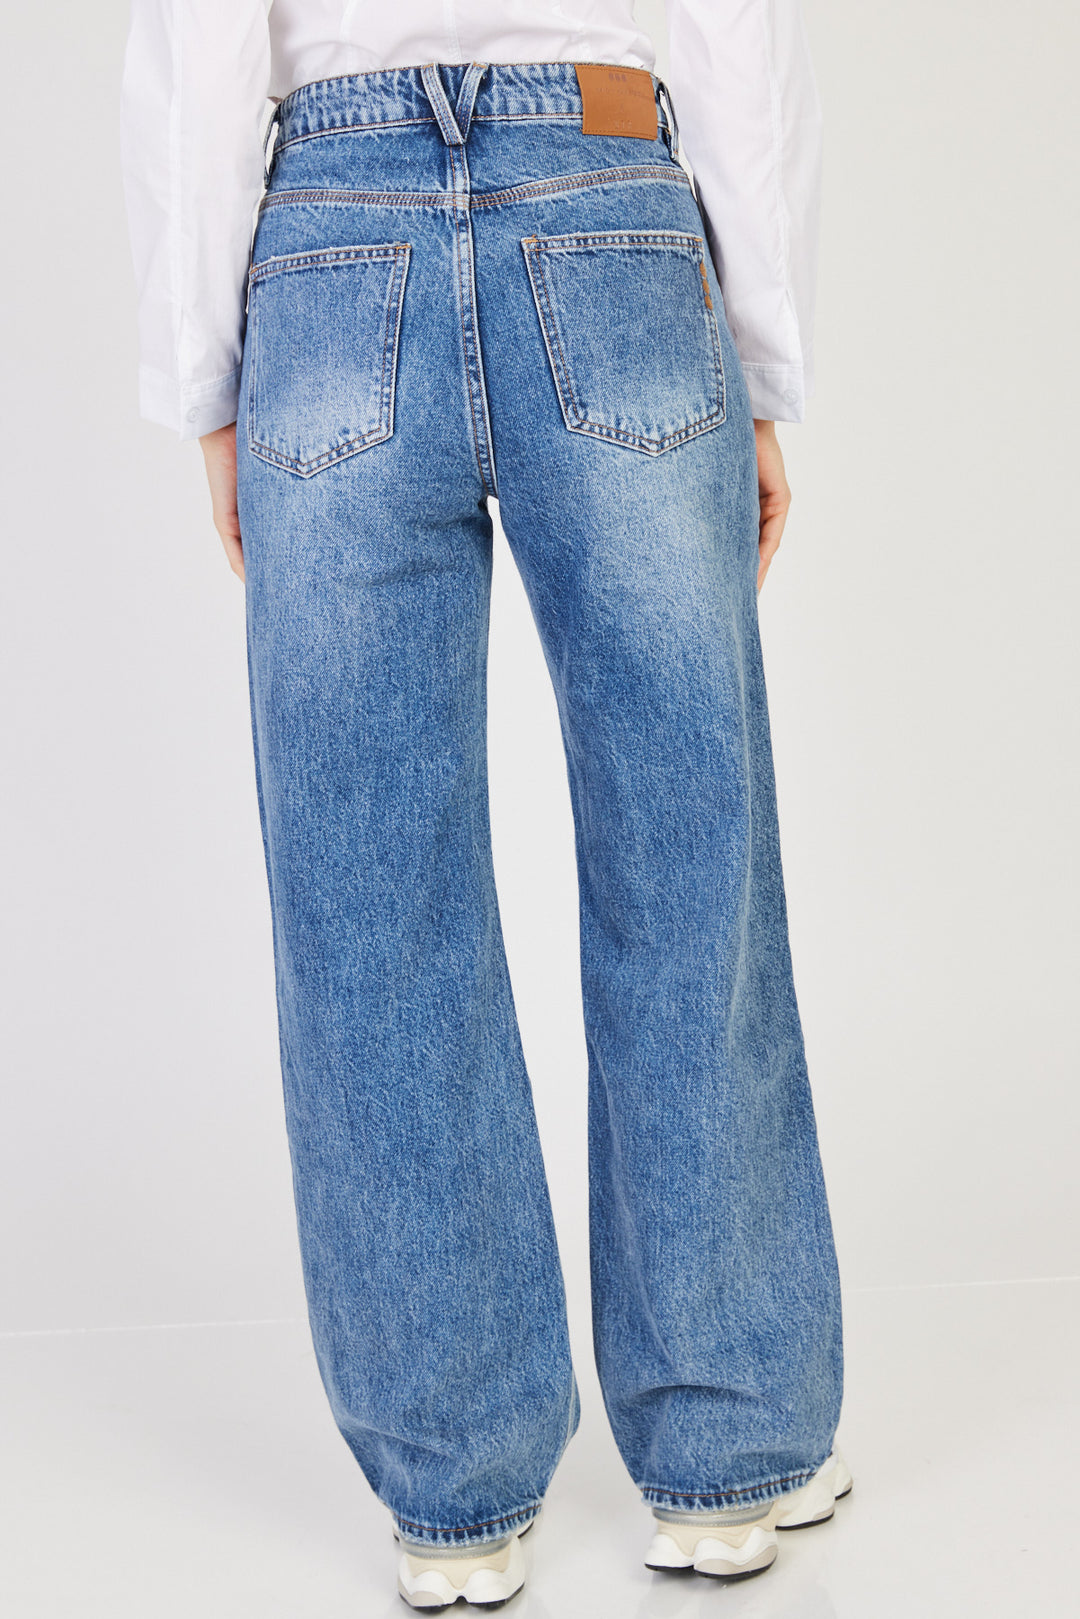 ג'ינס מדיסון בצבע כחול